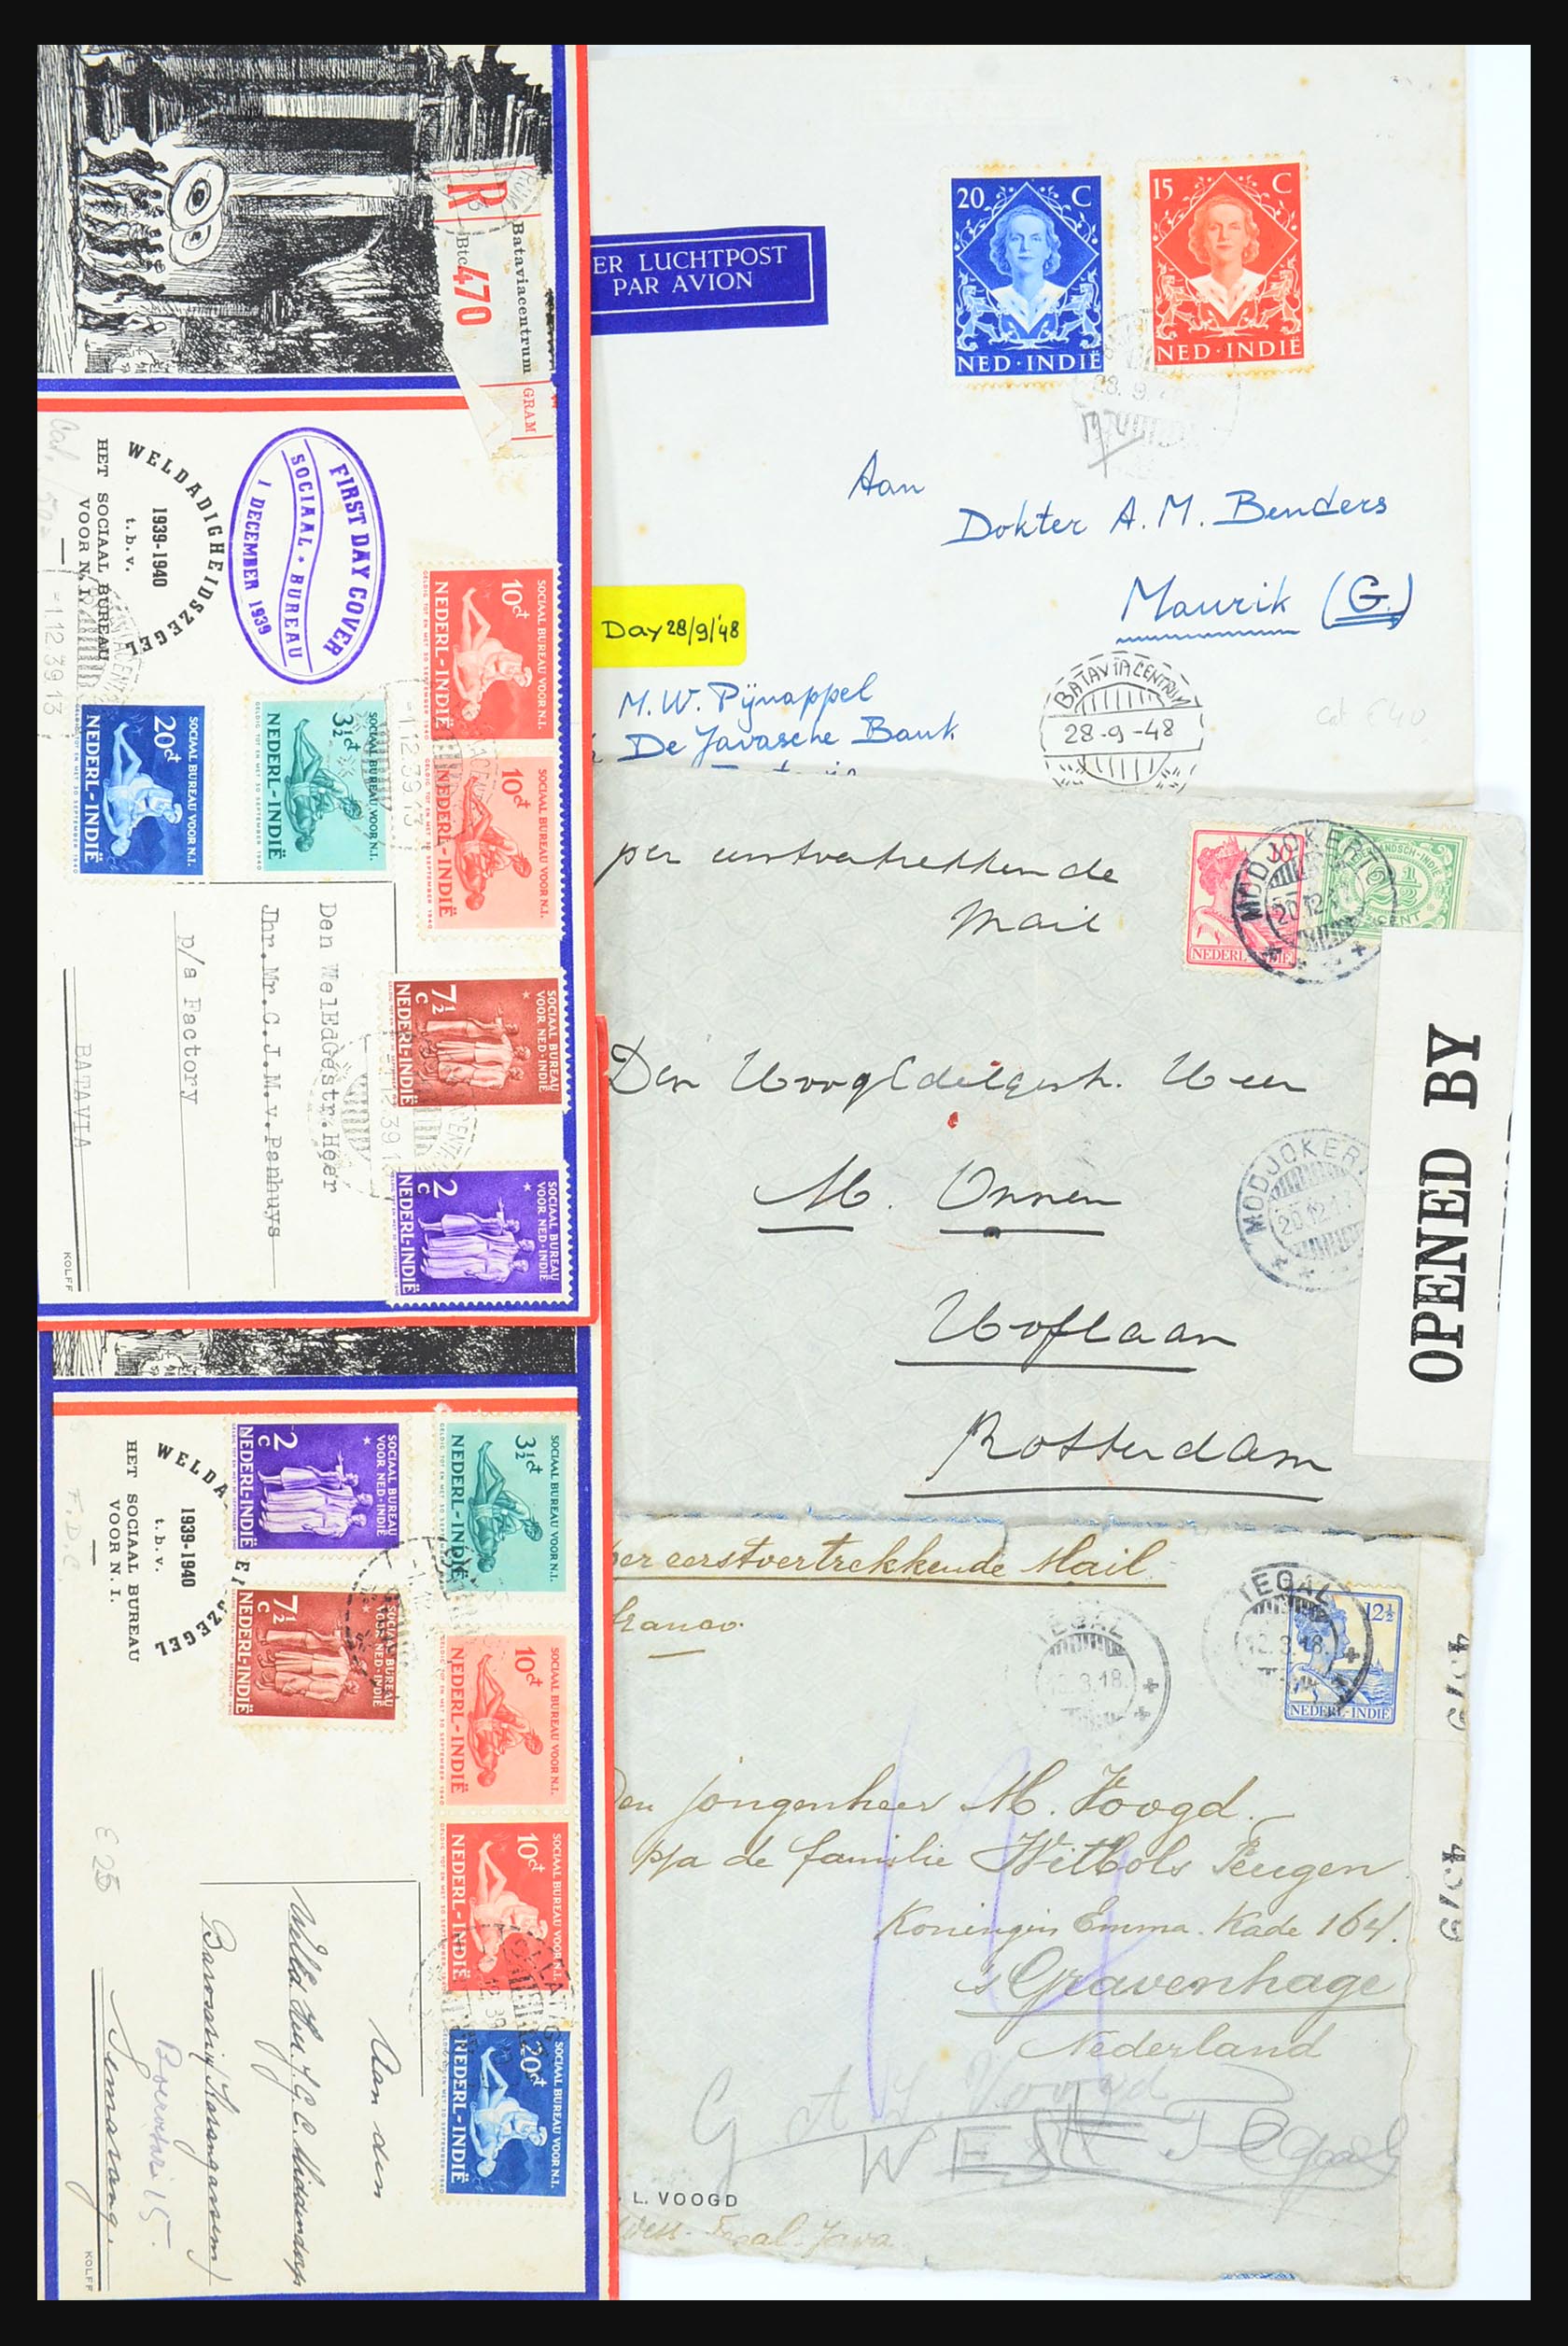 31361 051 - 31361 Nederlands Indië brieven 1880-1950.